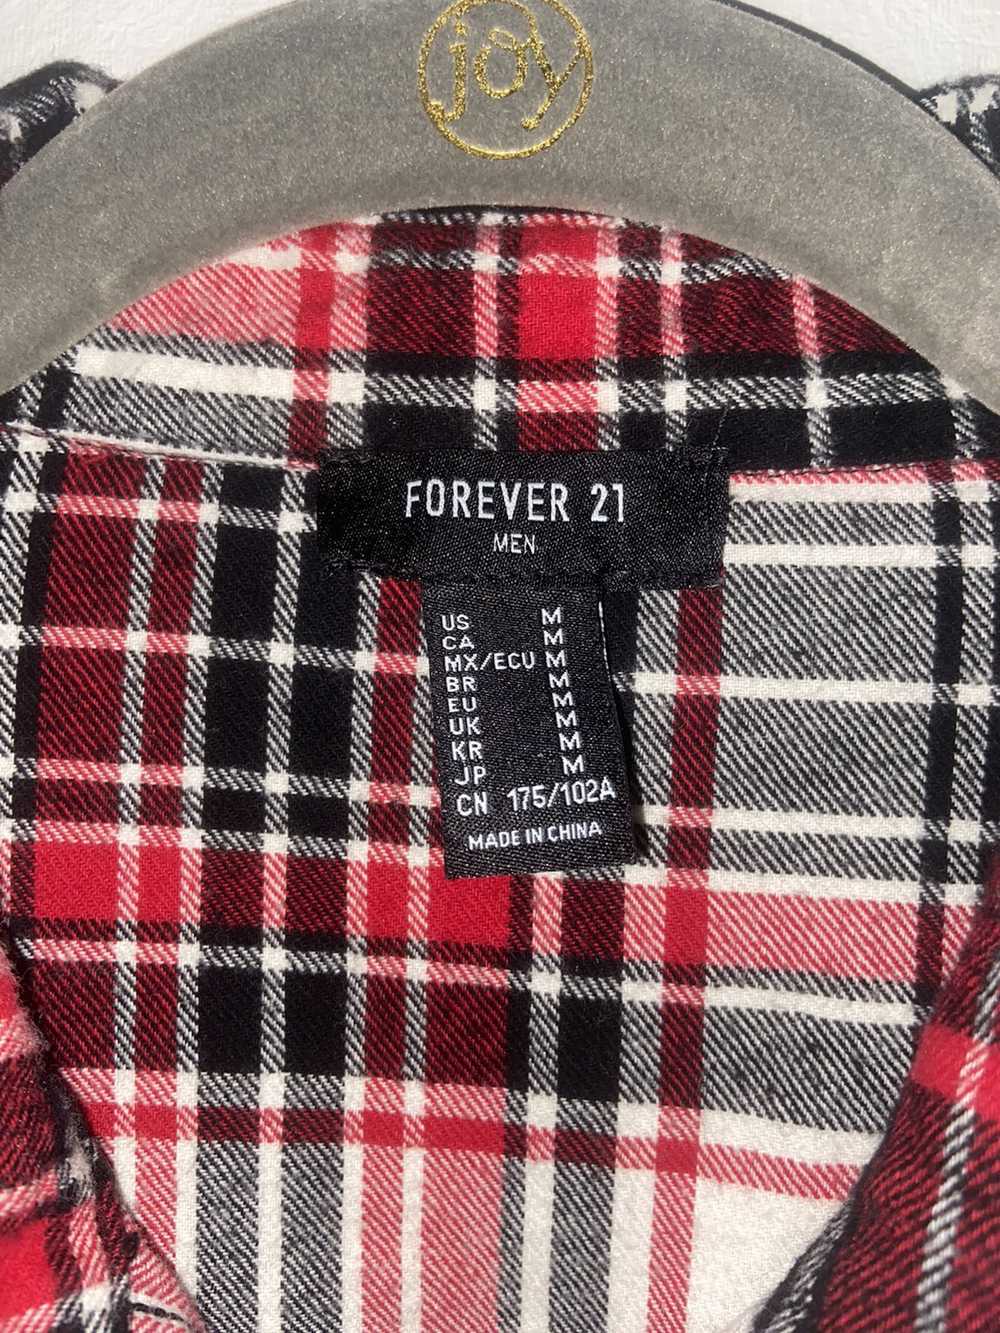 Forever 21 Mismatched Flannel - image 3